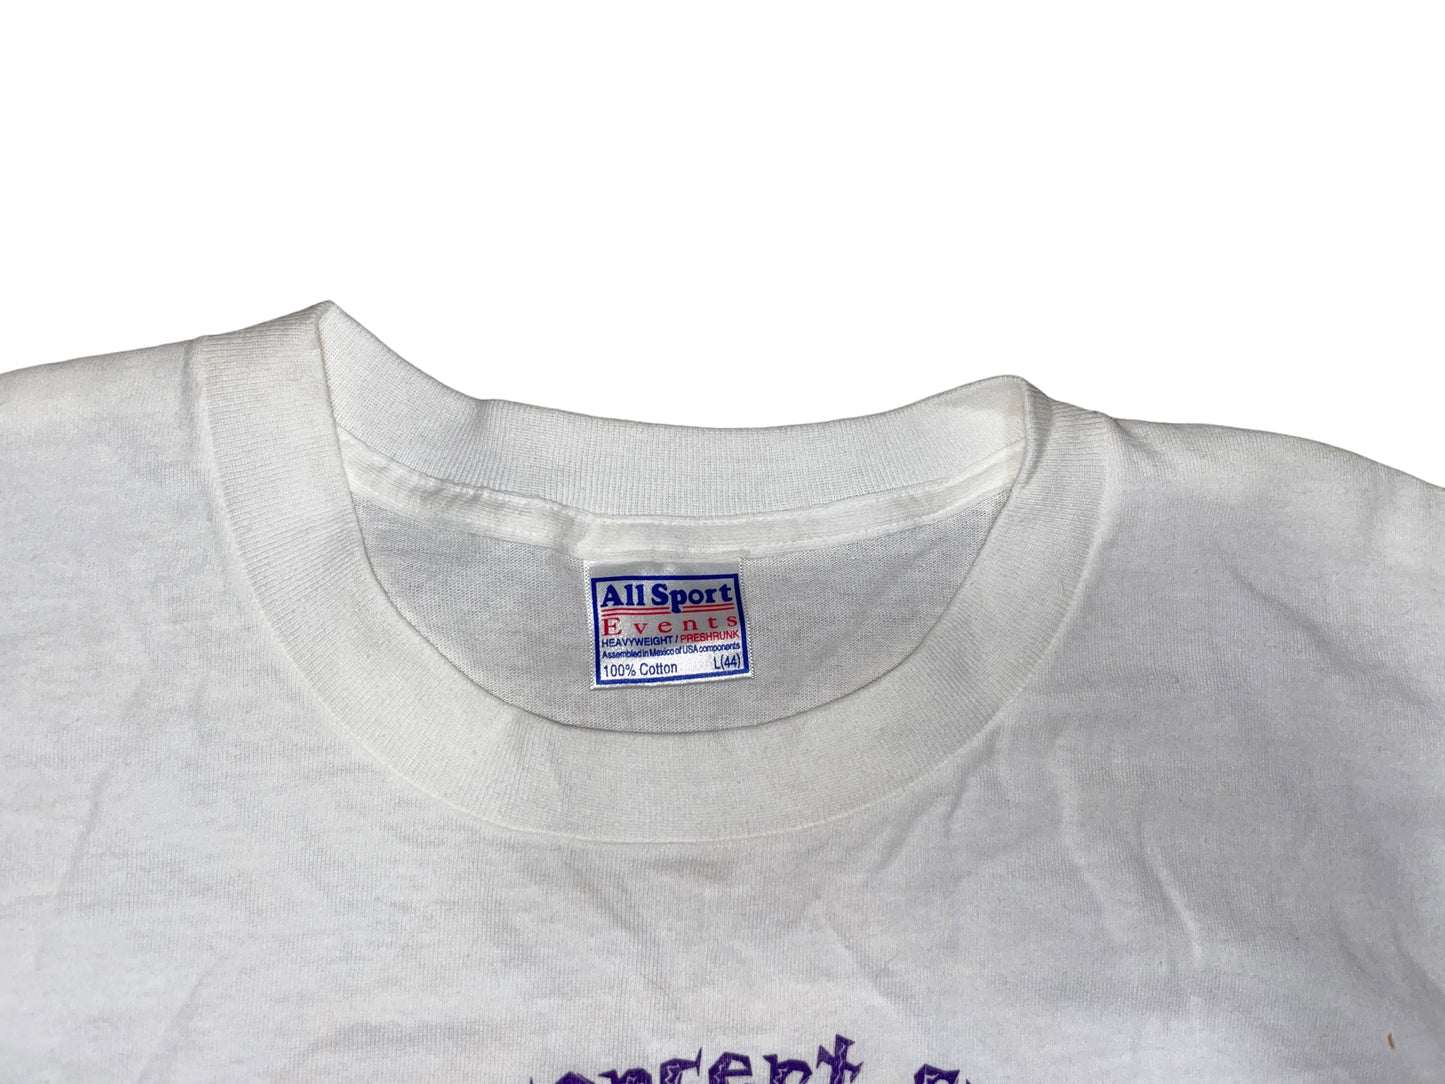 Vintage 2000 Gloria Estefan T-Shirt